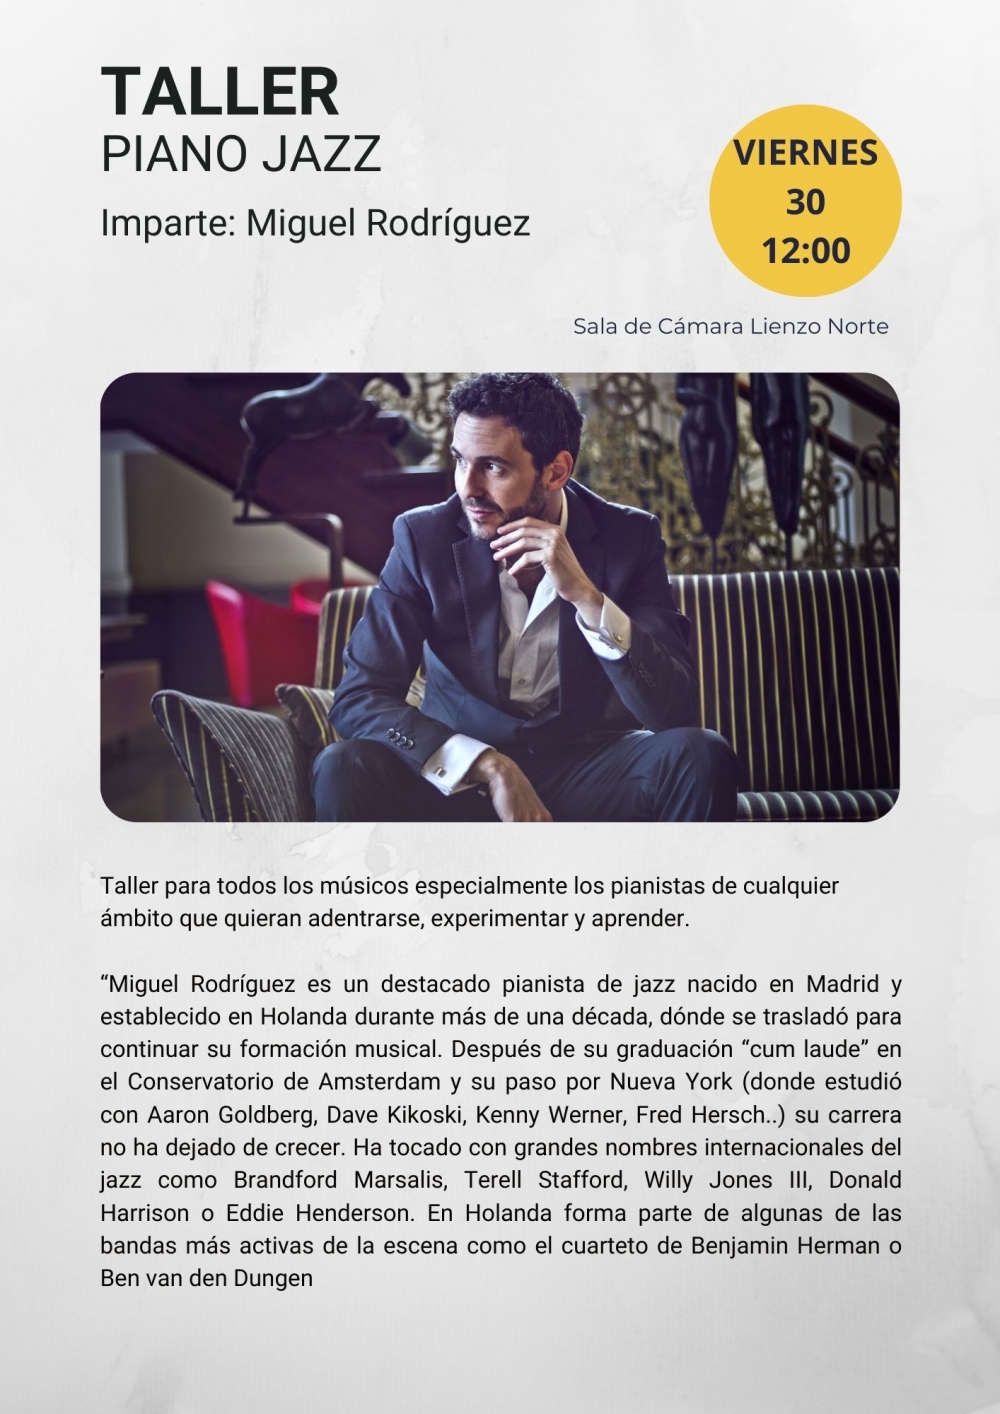 Taller de Piano Jazz. Miguel Rodríguez